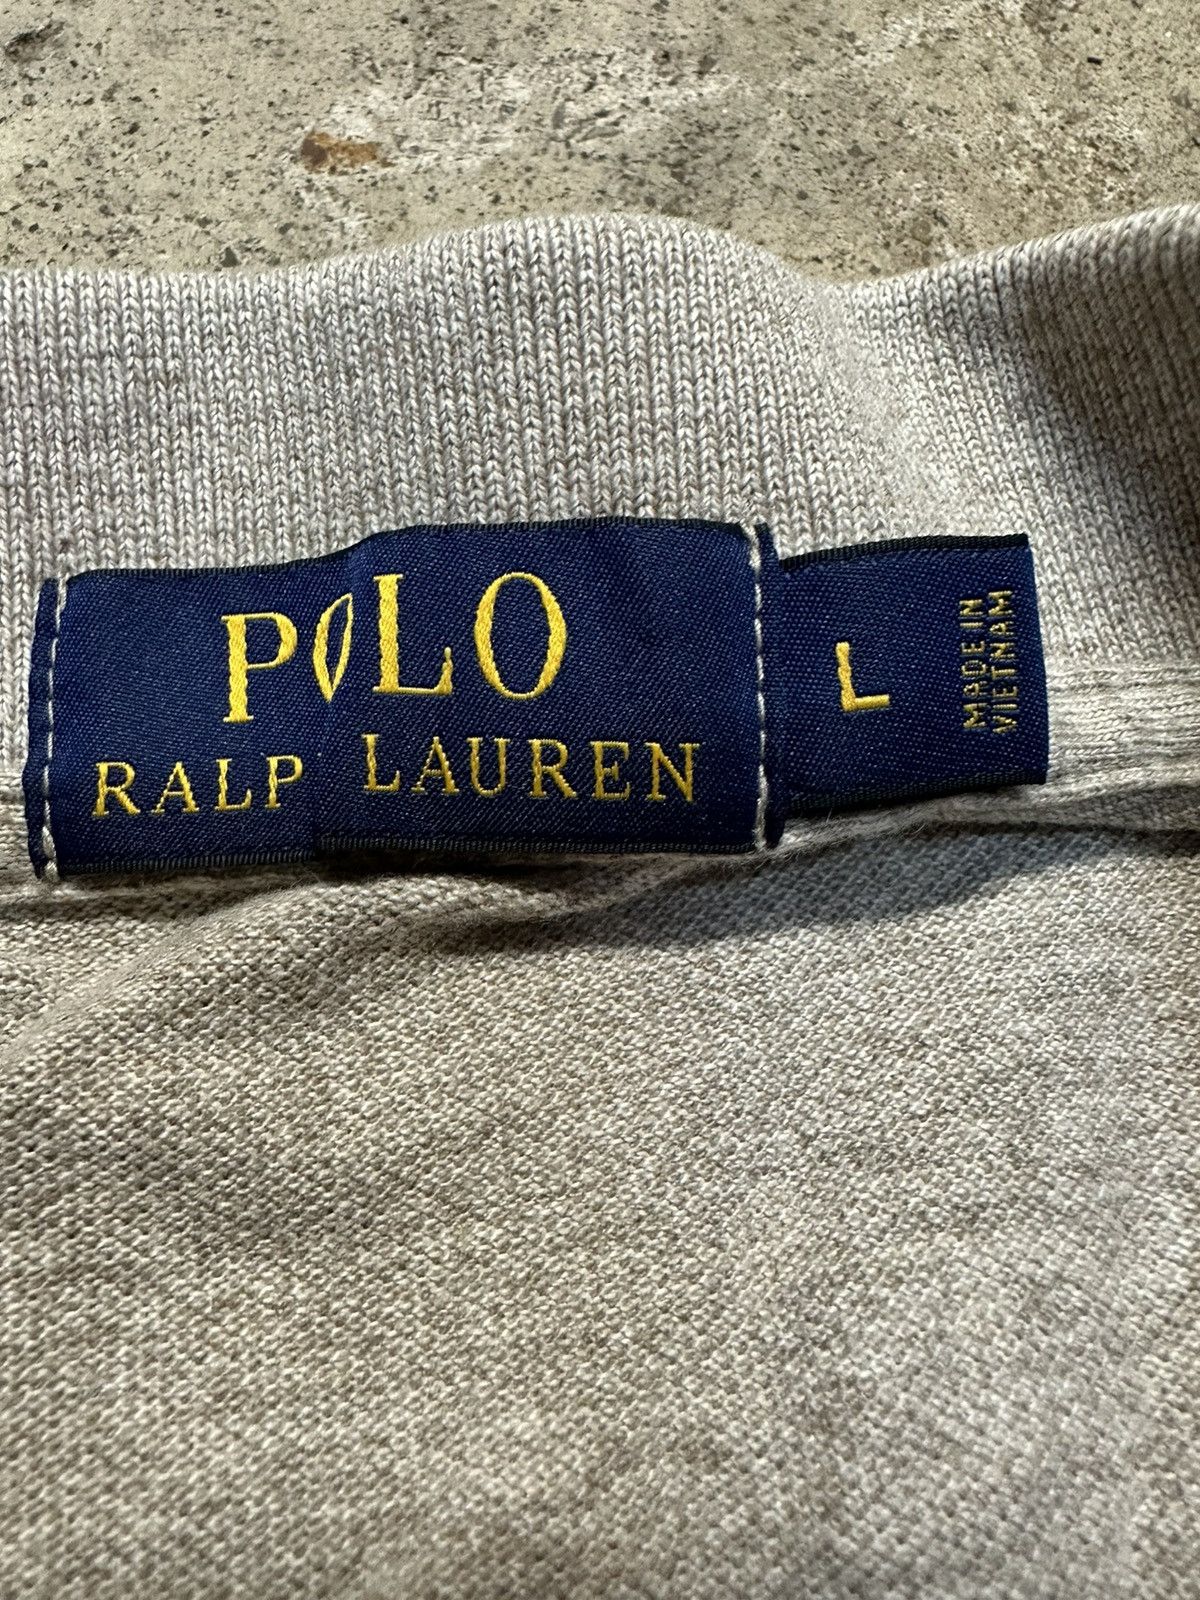 Polo Ralph Lauren GREY POLO RALPH LAUREN POLO BROWN LOGO Size US L / EU 52-54 / 3 - 3 Thumbnail